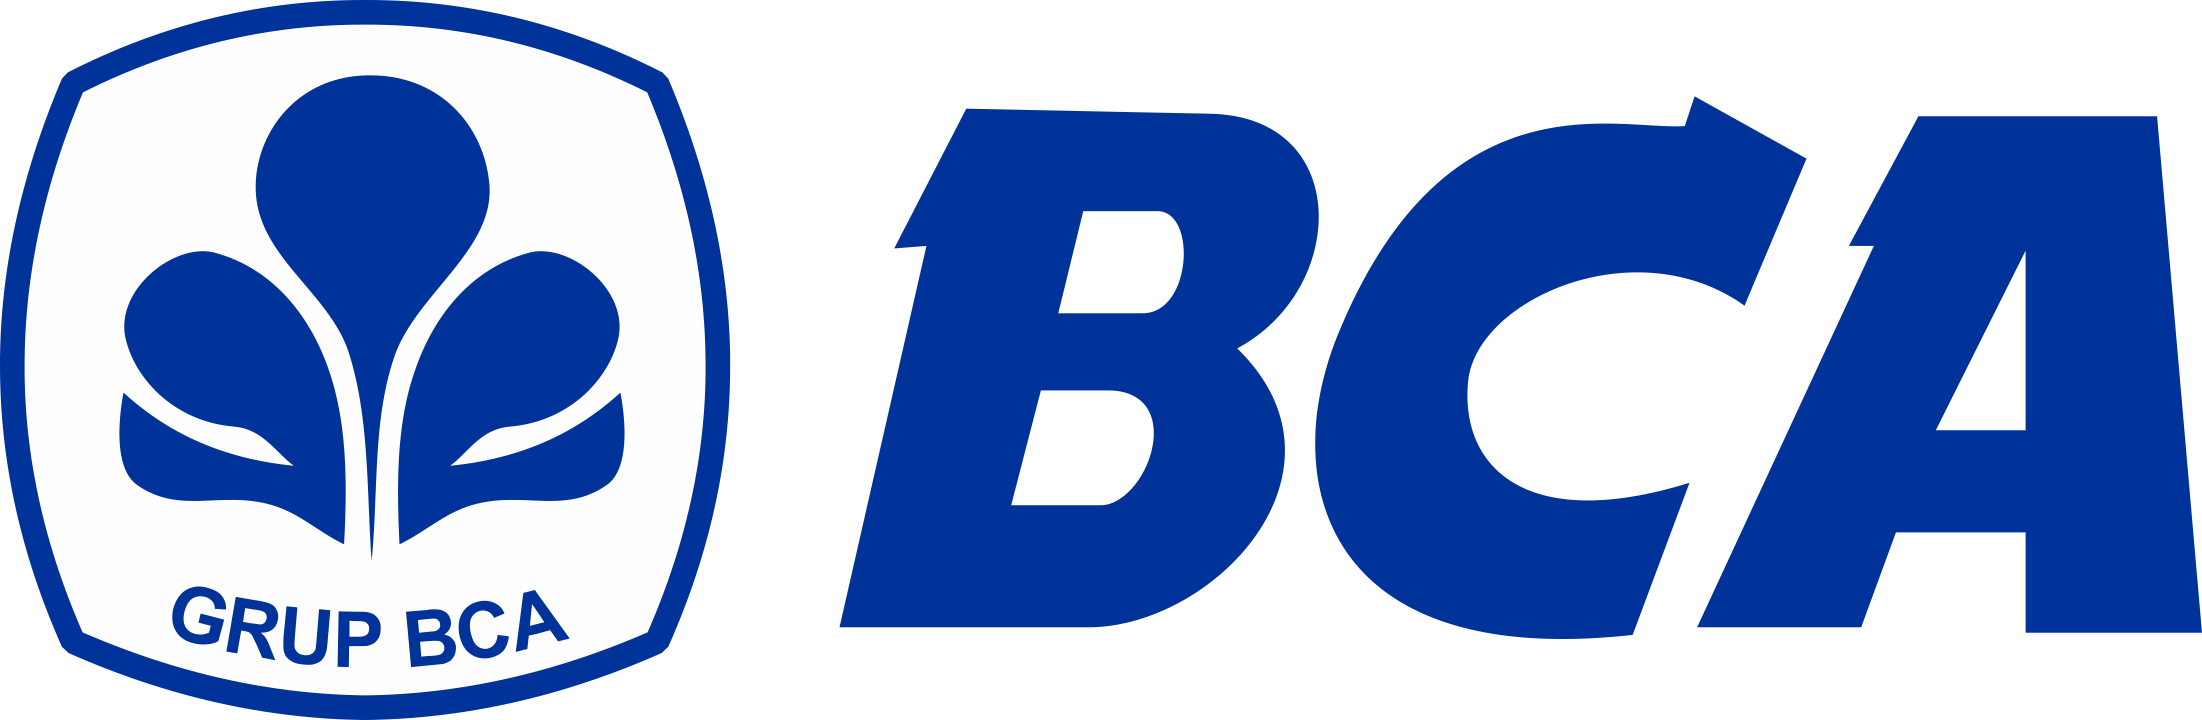 Bank-BCA-Logo-PNG-720p-FileVector69-1-1-1.png